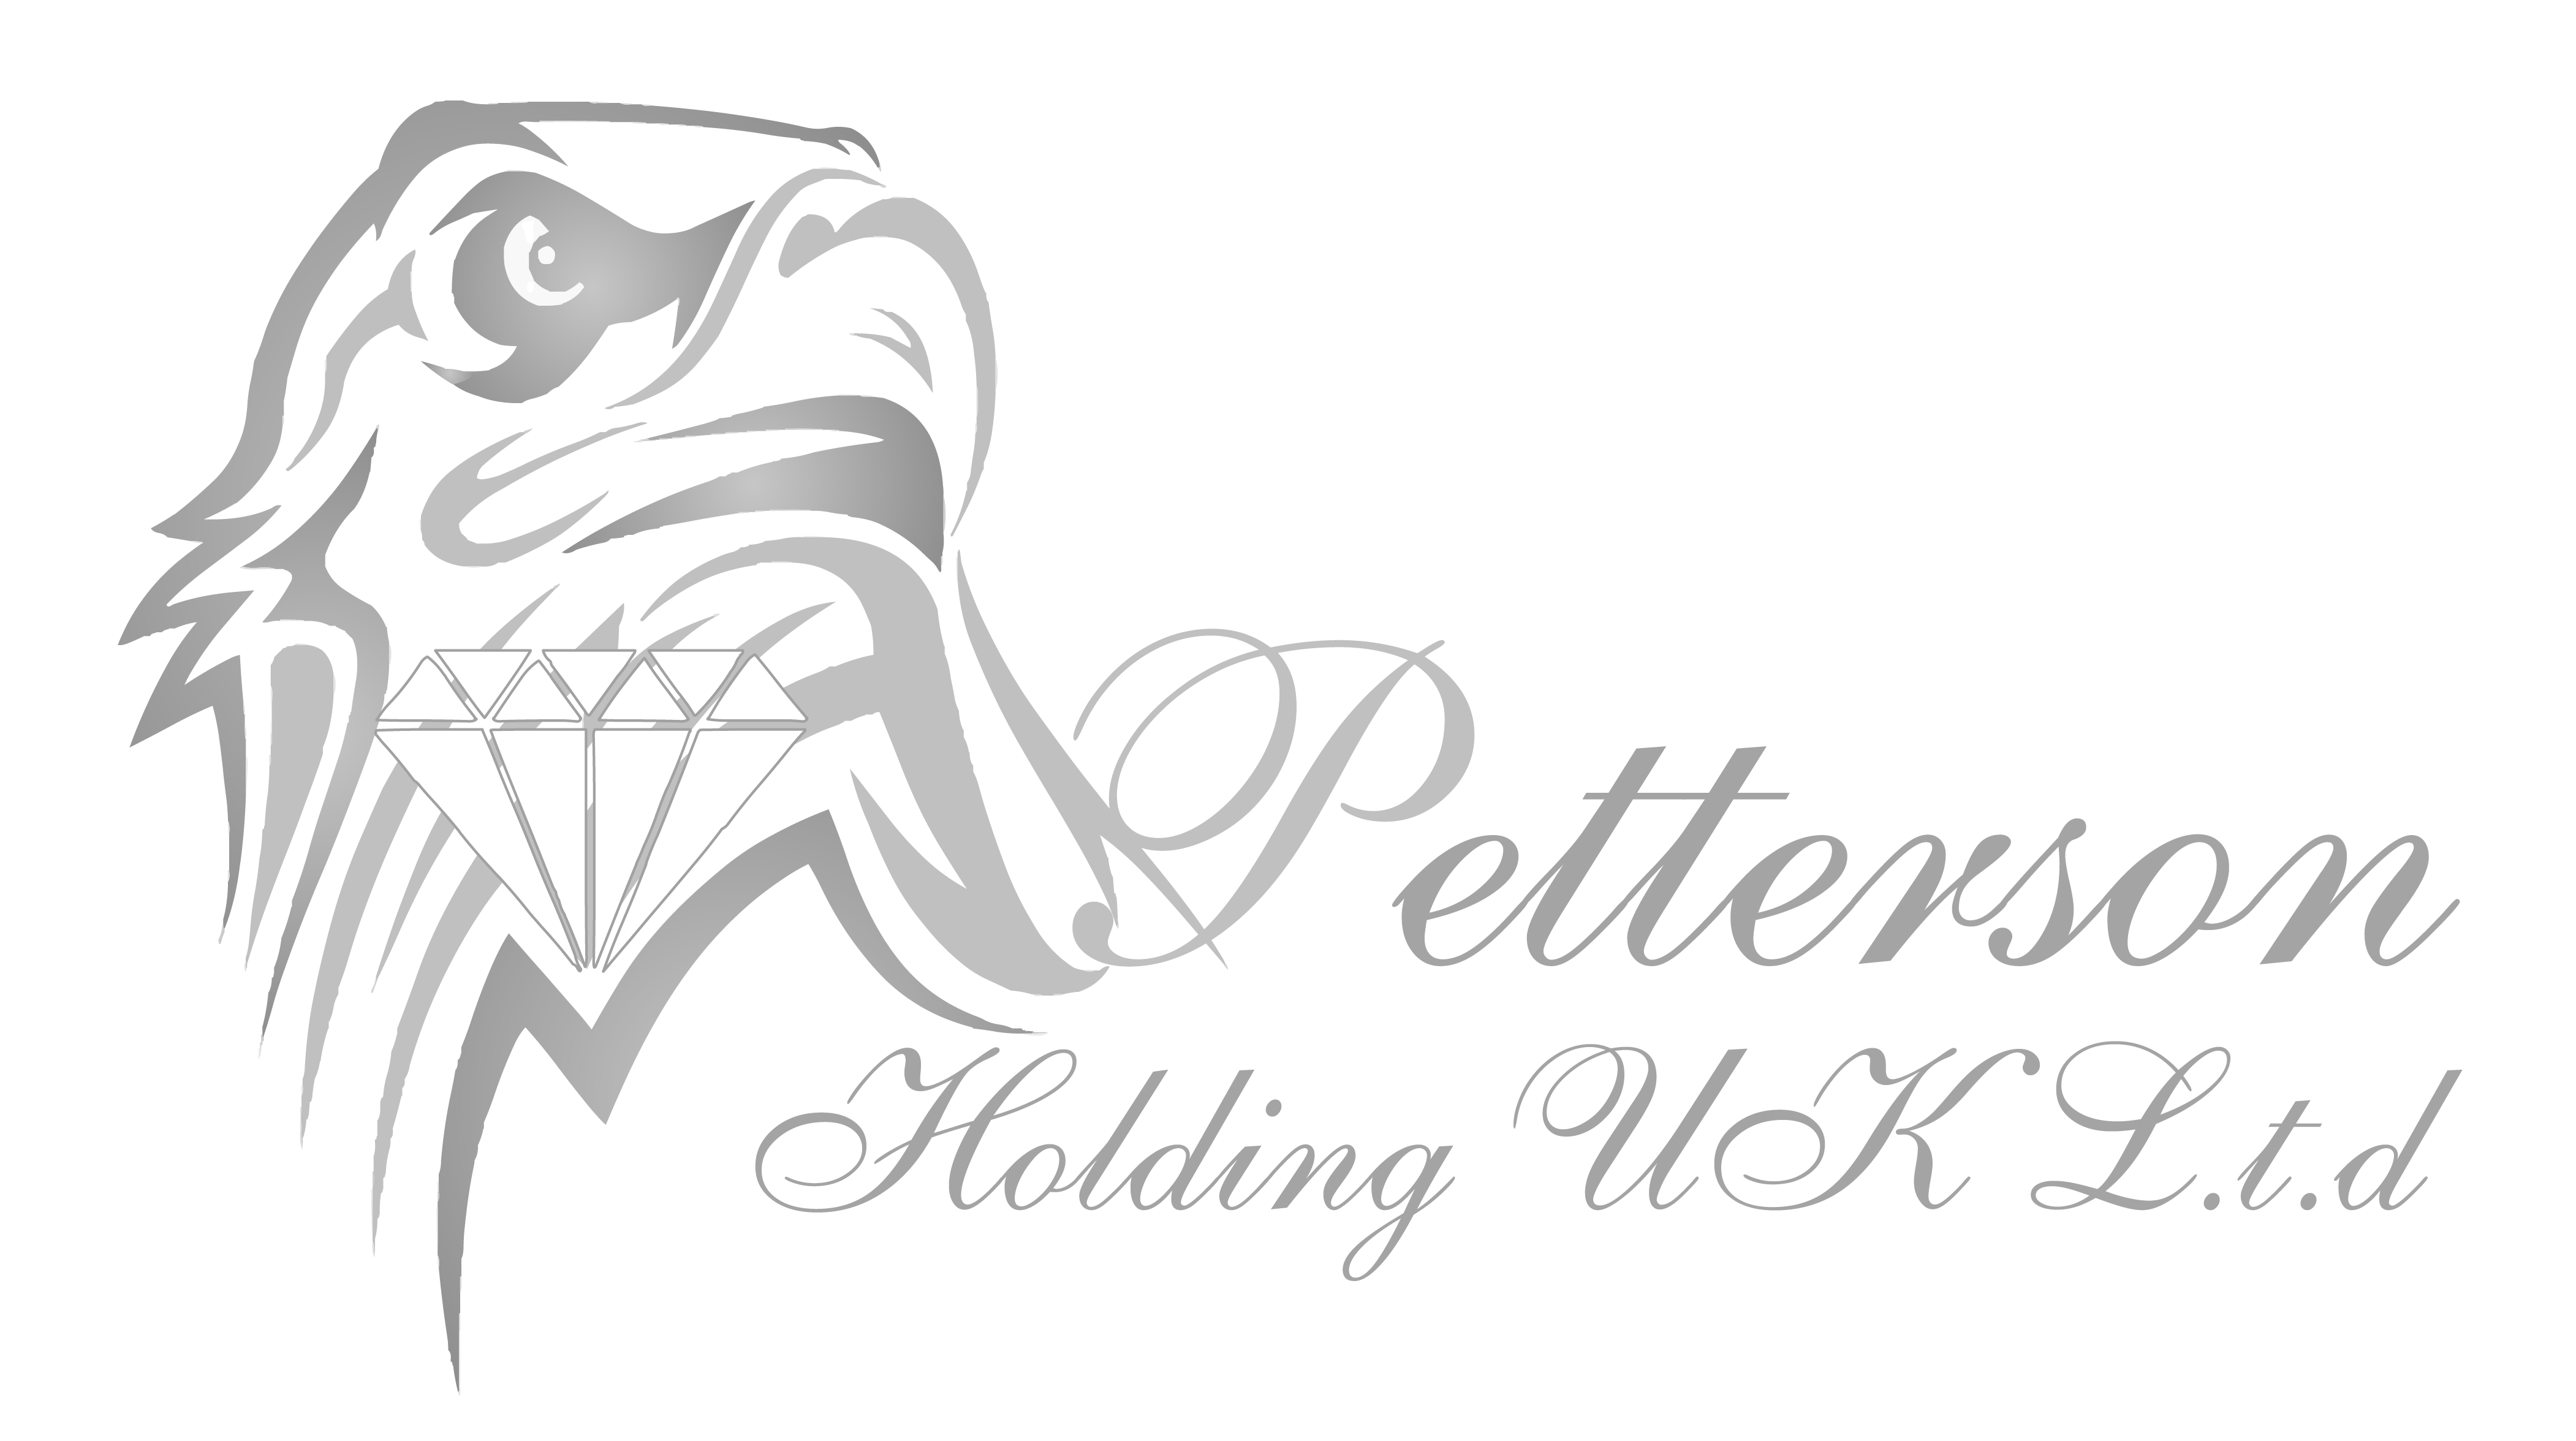 Petterson Holding UK L.T.D.